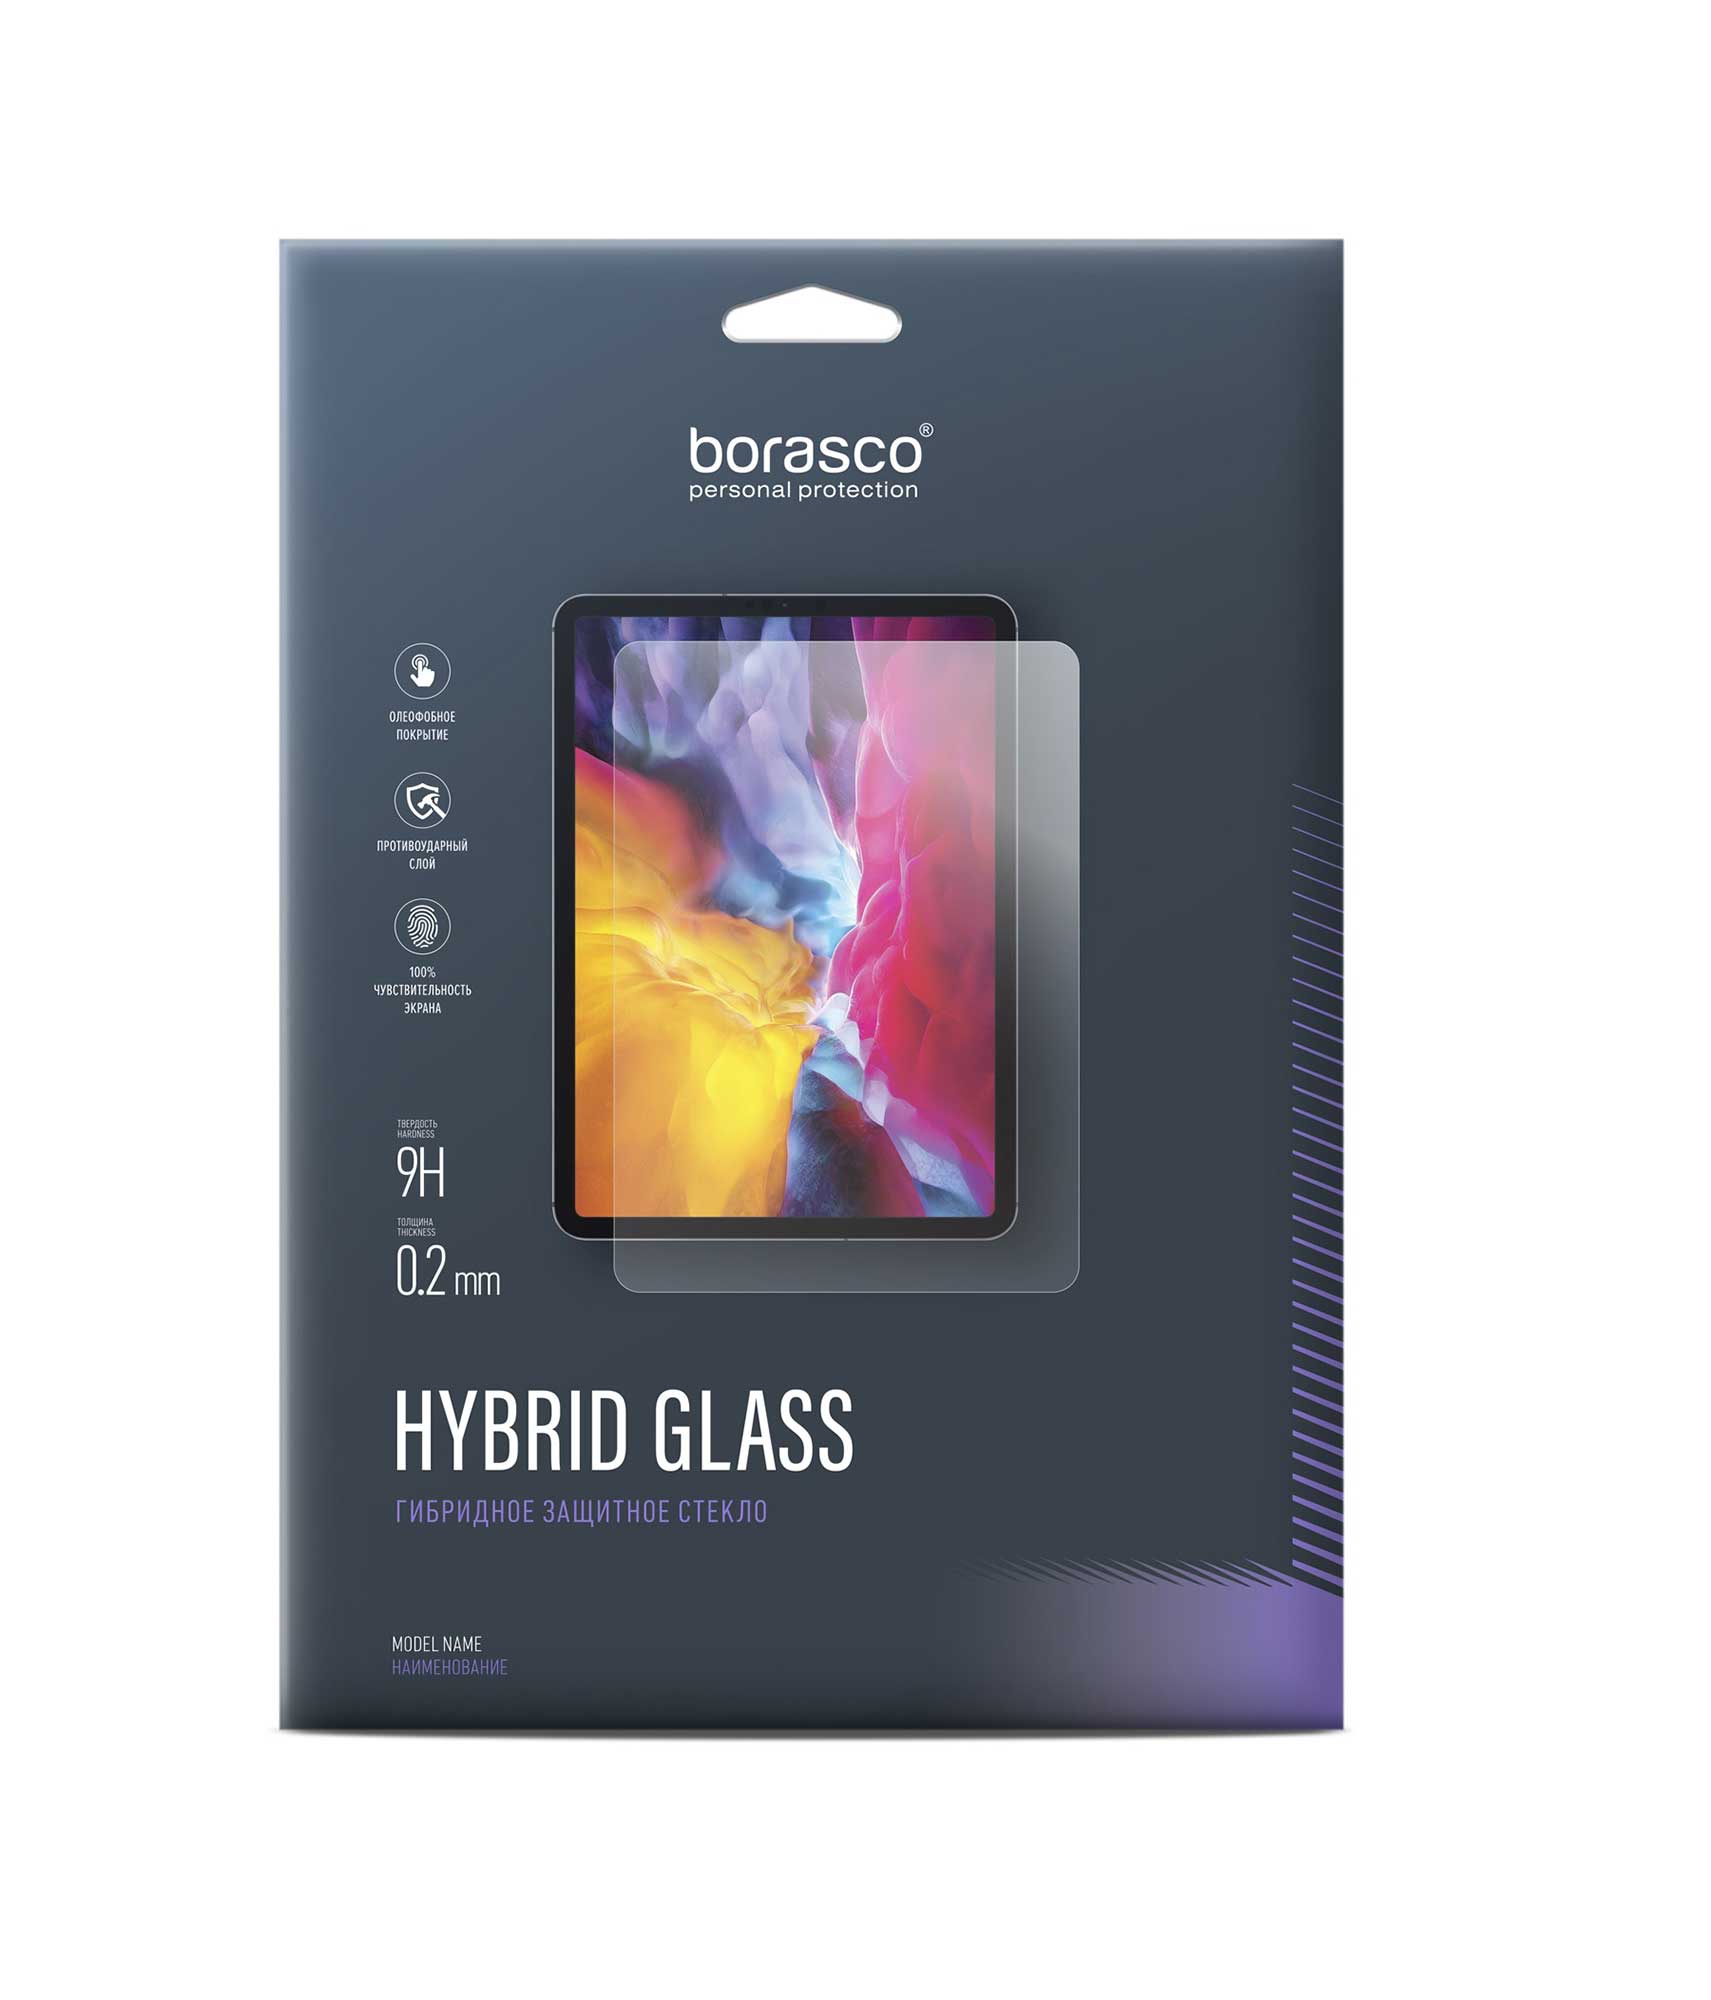 Защитное стекло BoraSCO Hybrid Glass для Samsung Galaxy Tab Pro 10.1 SM-T520 защитное стекло hybrid glass для samsung galaxy tab s7 sm t970 sm t975